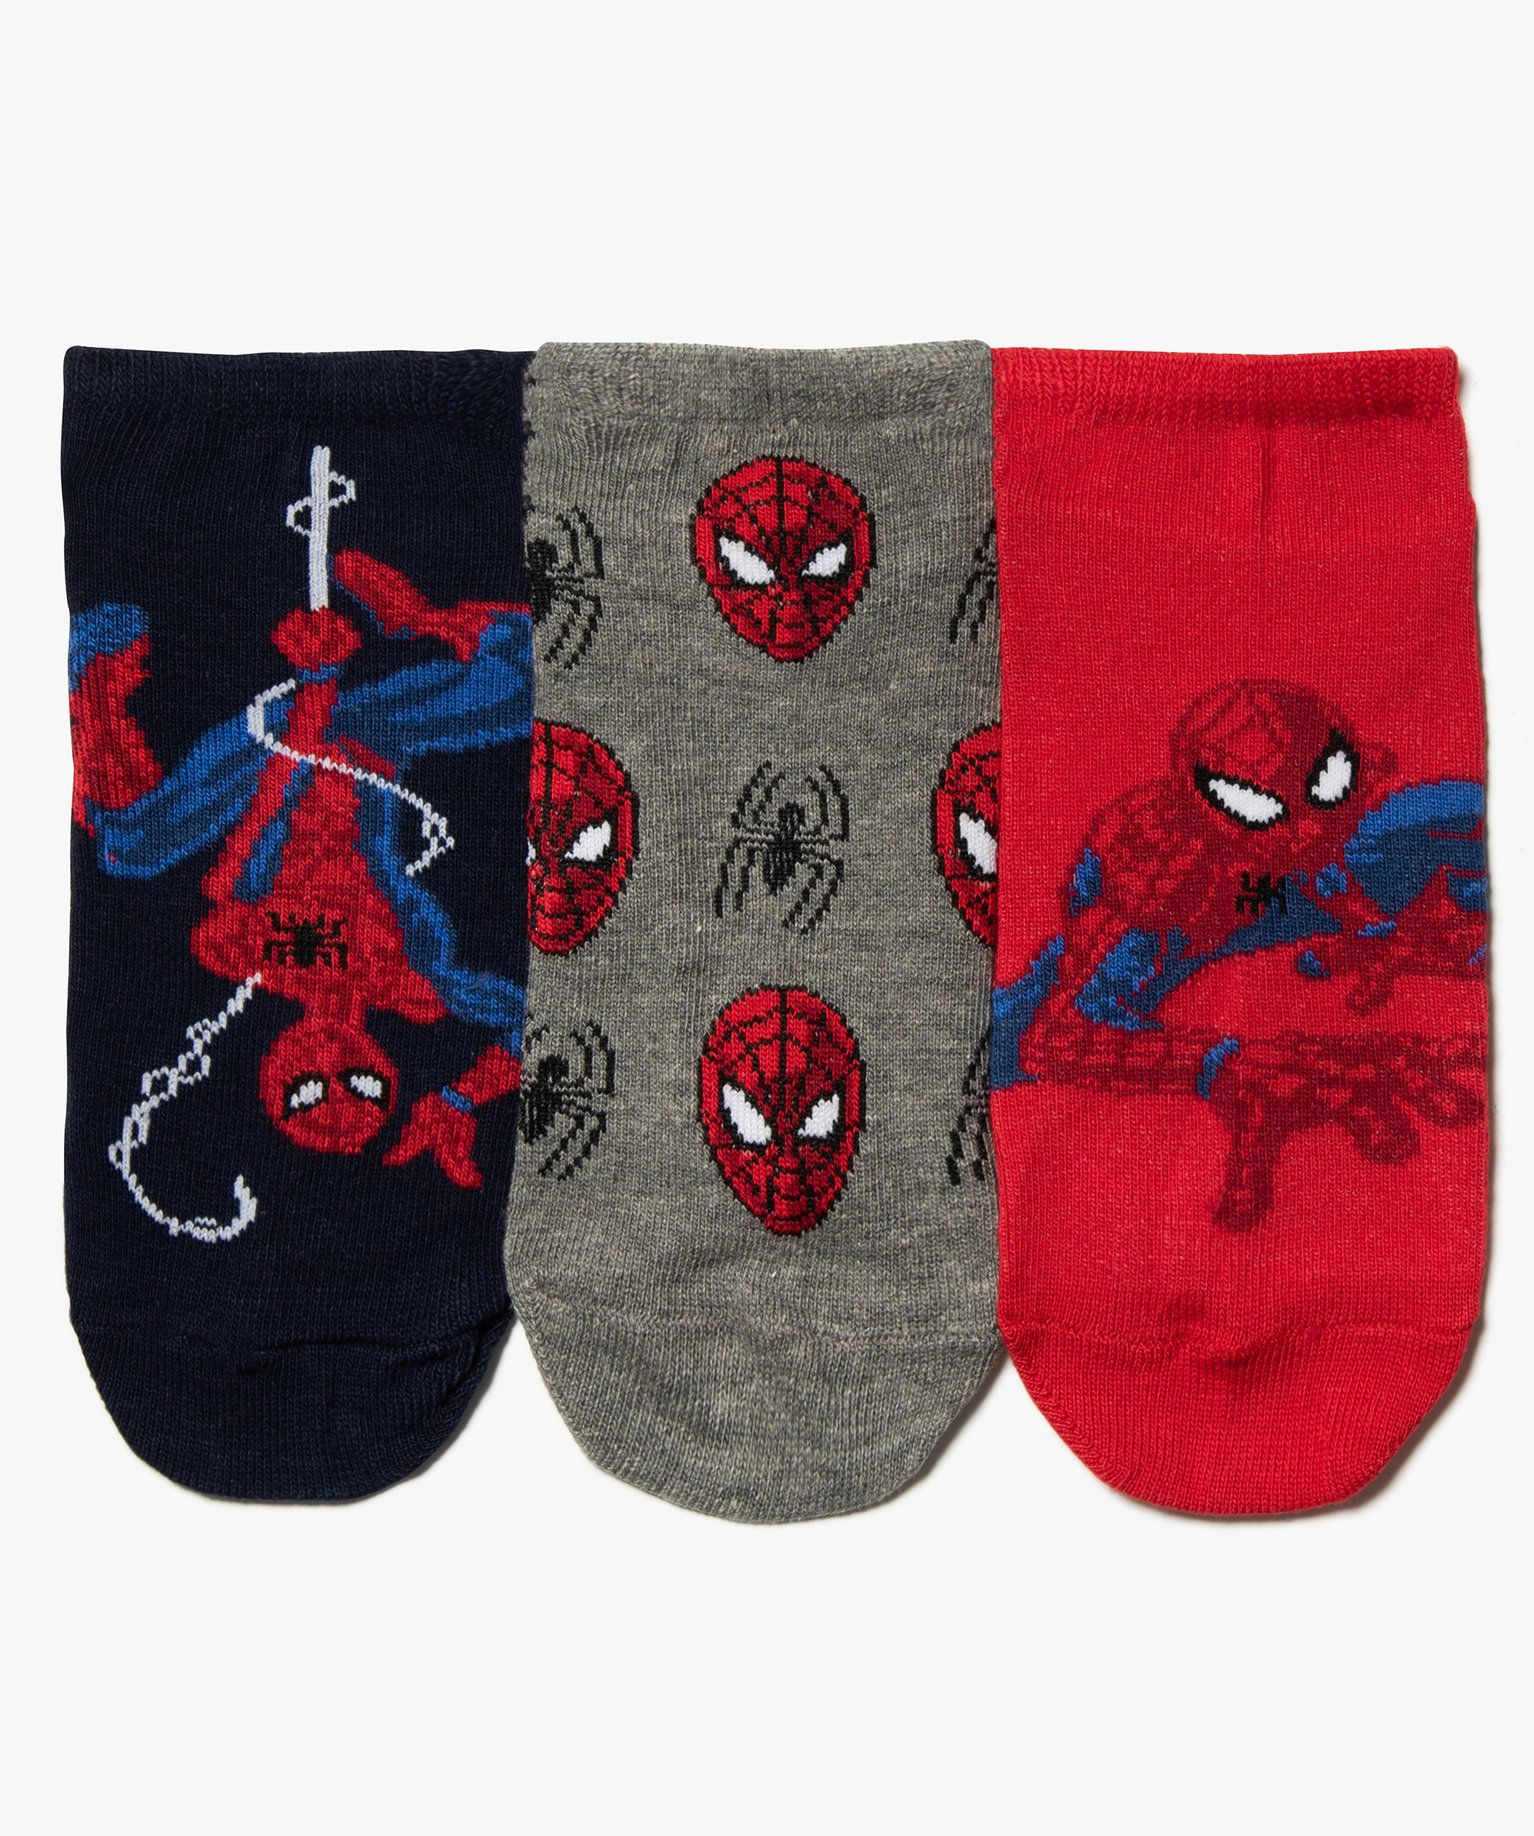 chaussettes garcon ultra courtes a motifs (lot de 3) - spiderman rouge